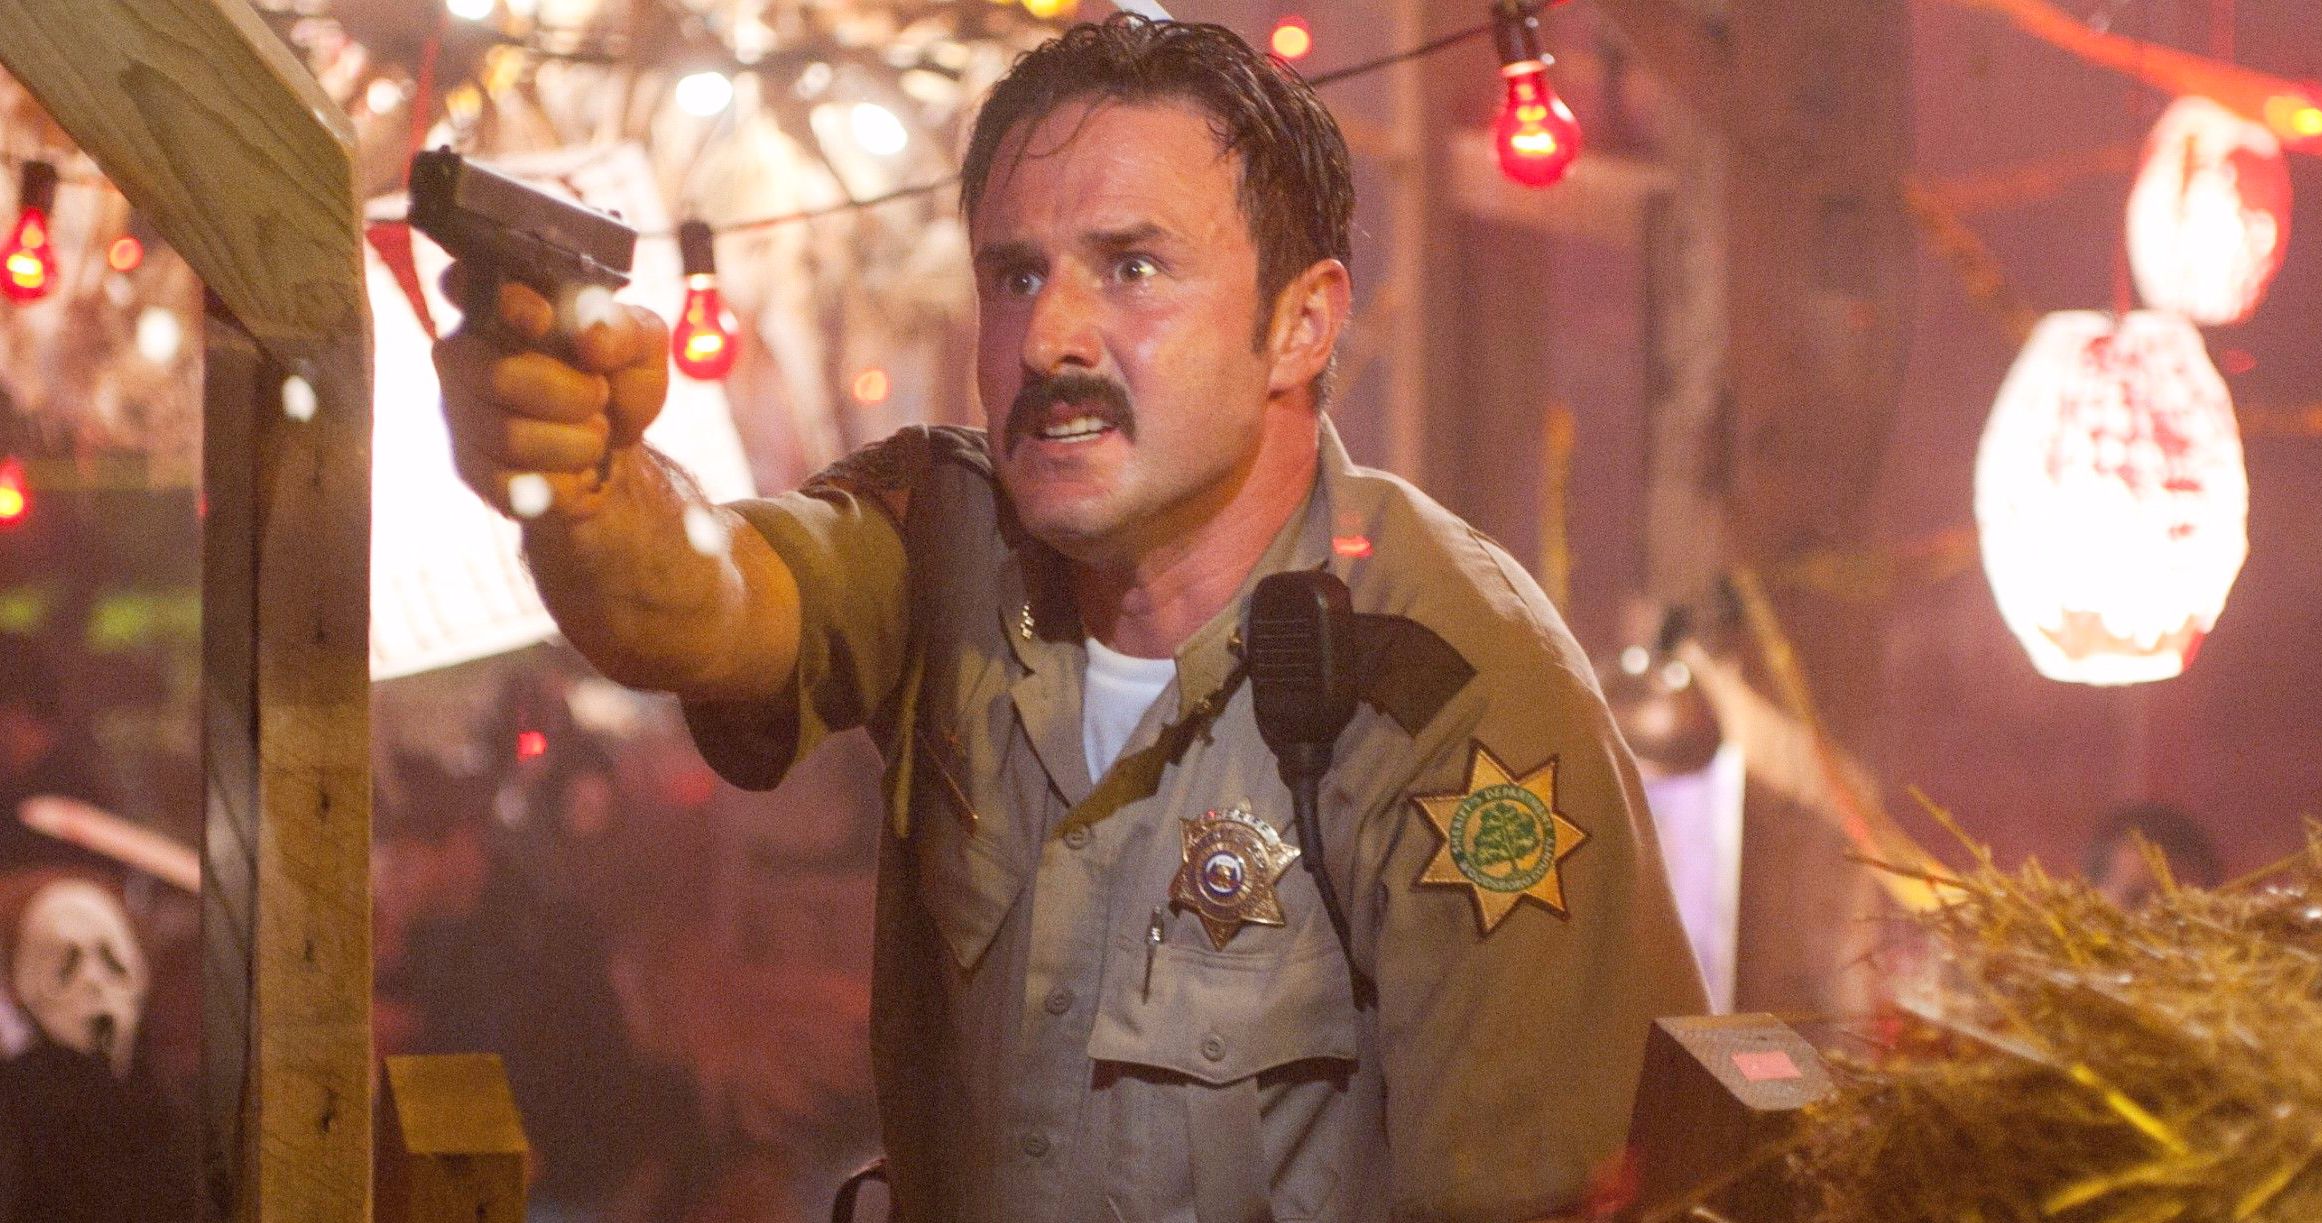 Scream 5 Brings Back David Arquette as Sheriff Dewey Riley